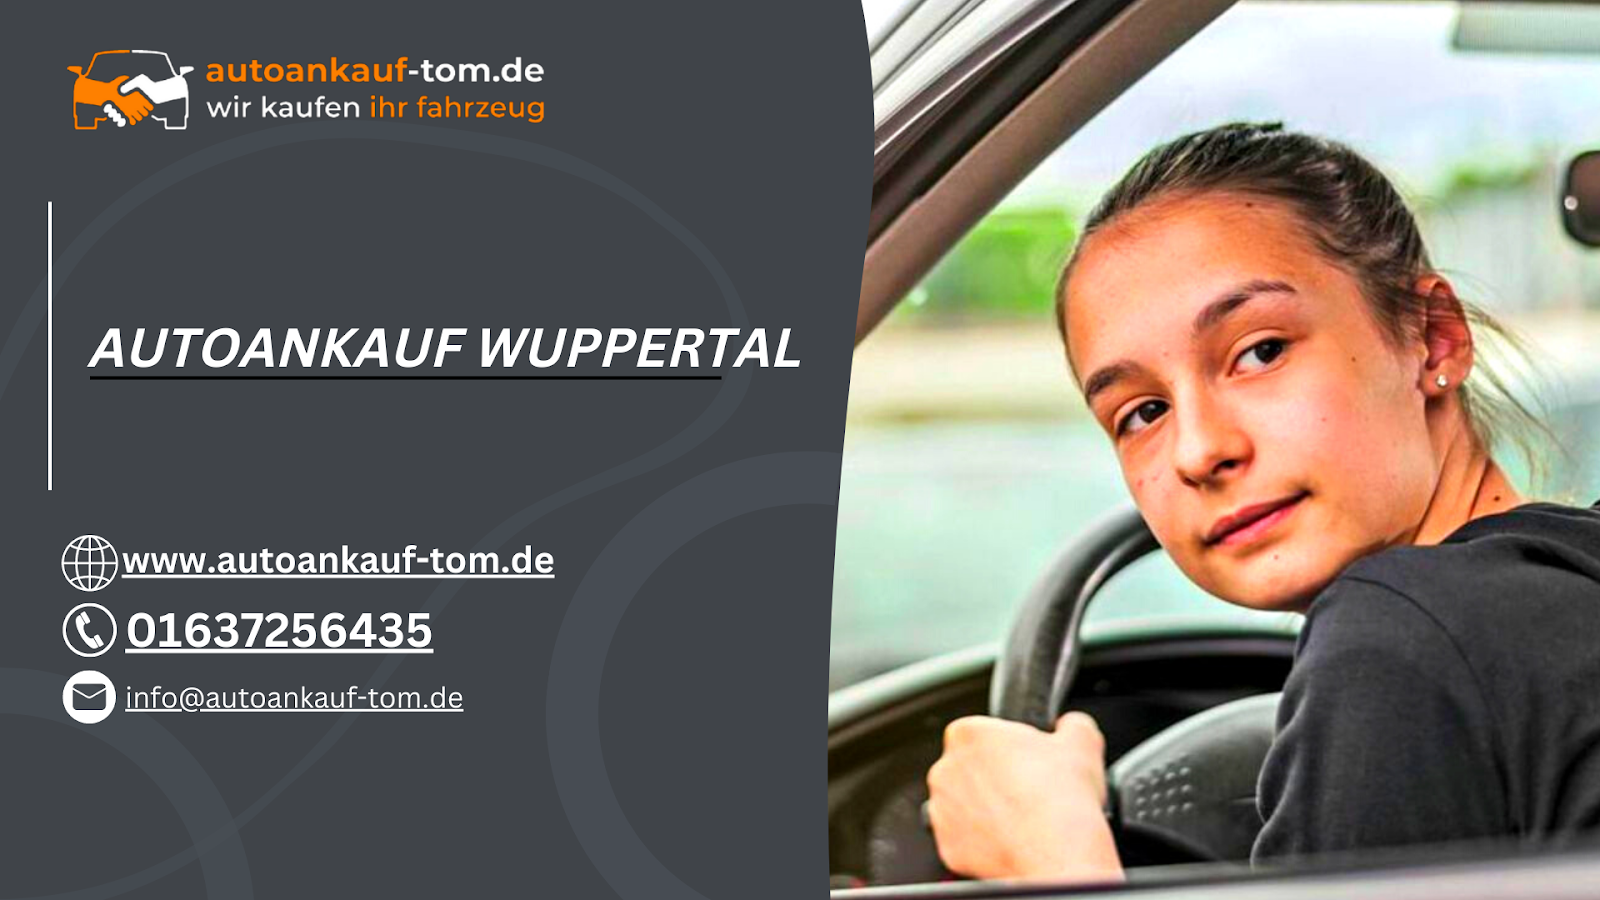 Autoankauf Wuppertal: Verkaufen Sie Ihr Auto schnell und unkompliziert zum besten Preis